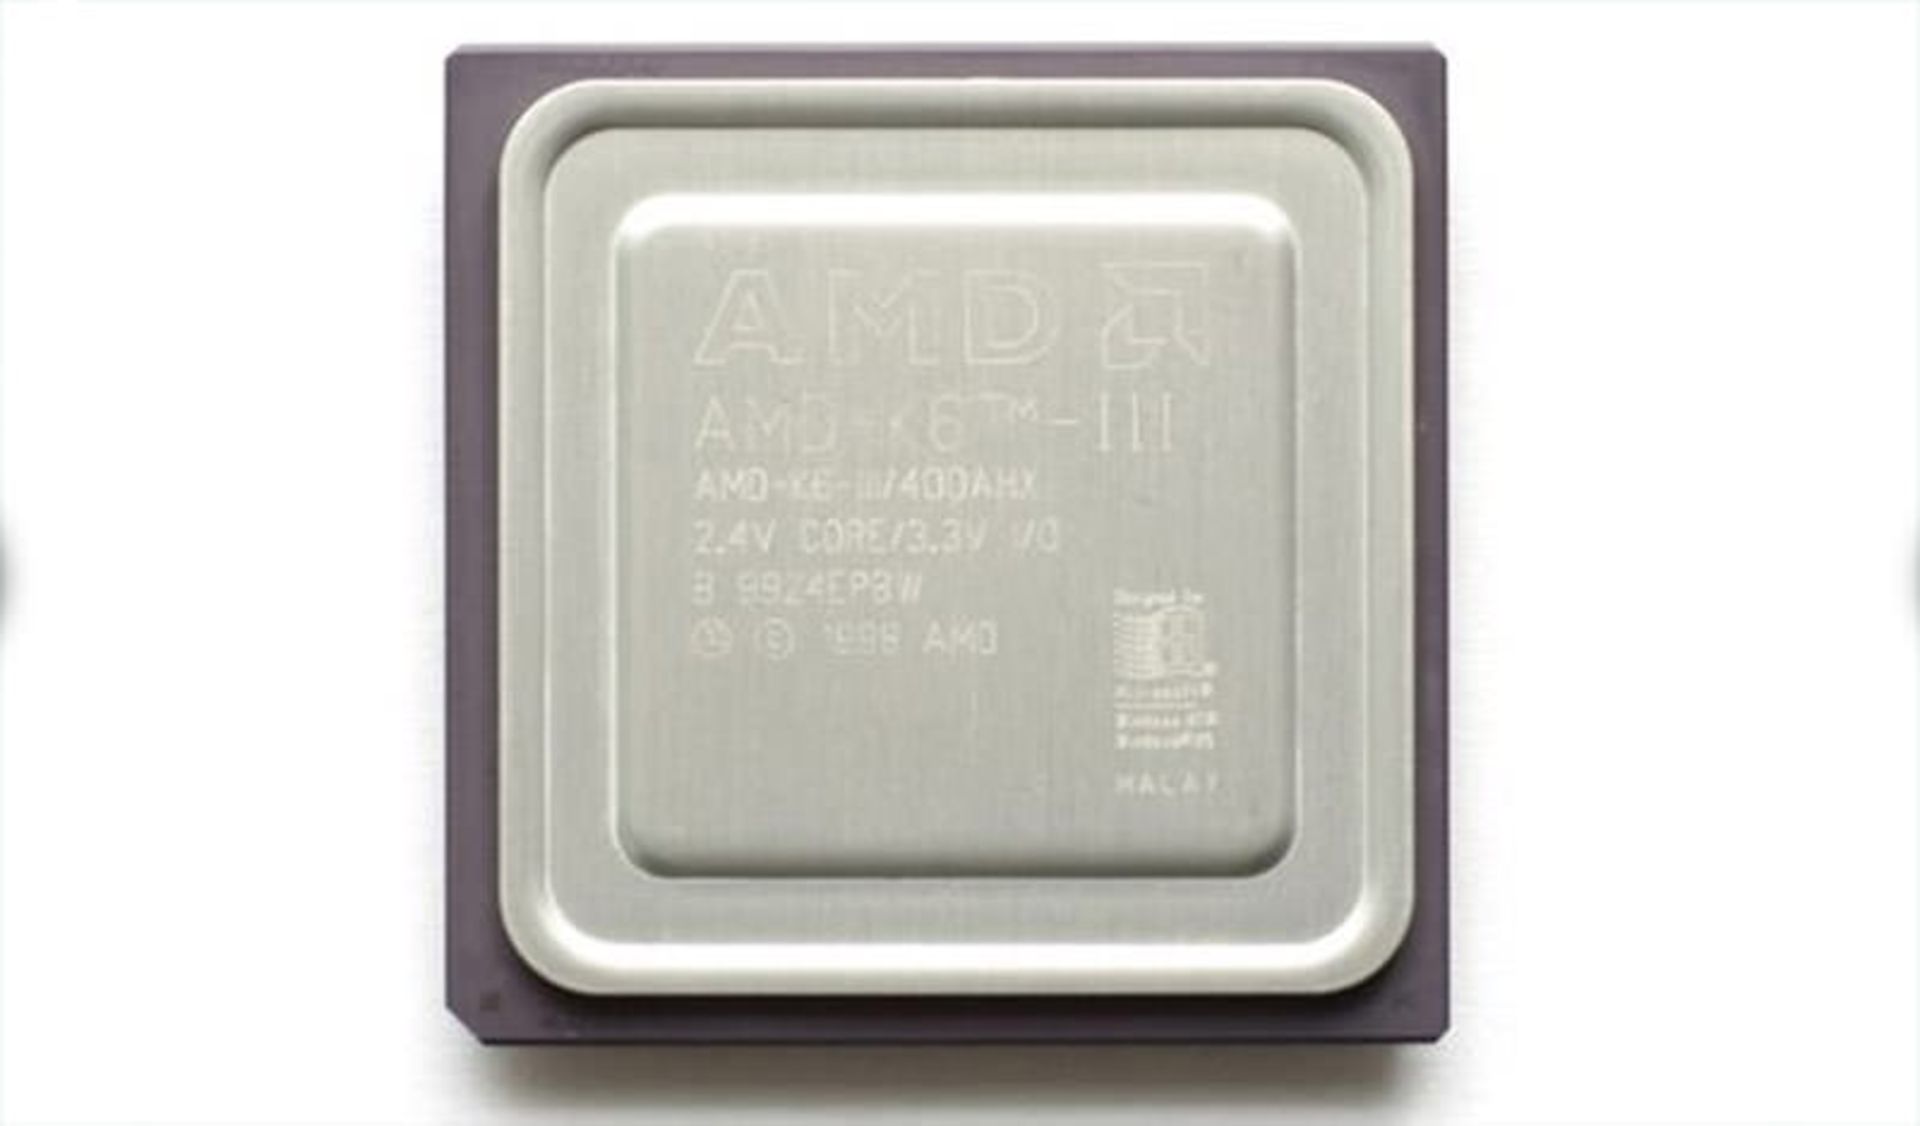 پردازنده amd k6